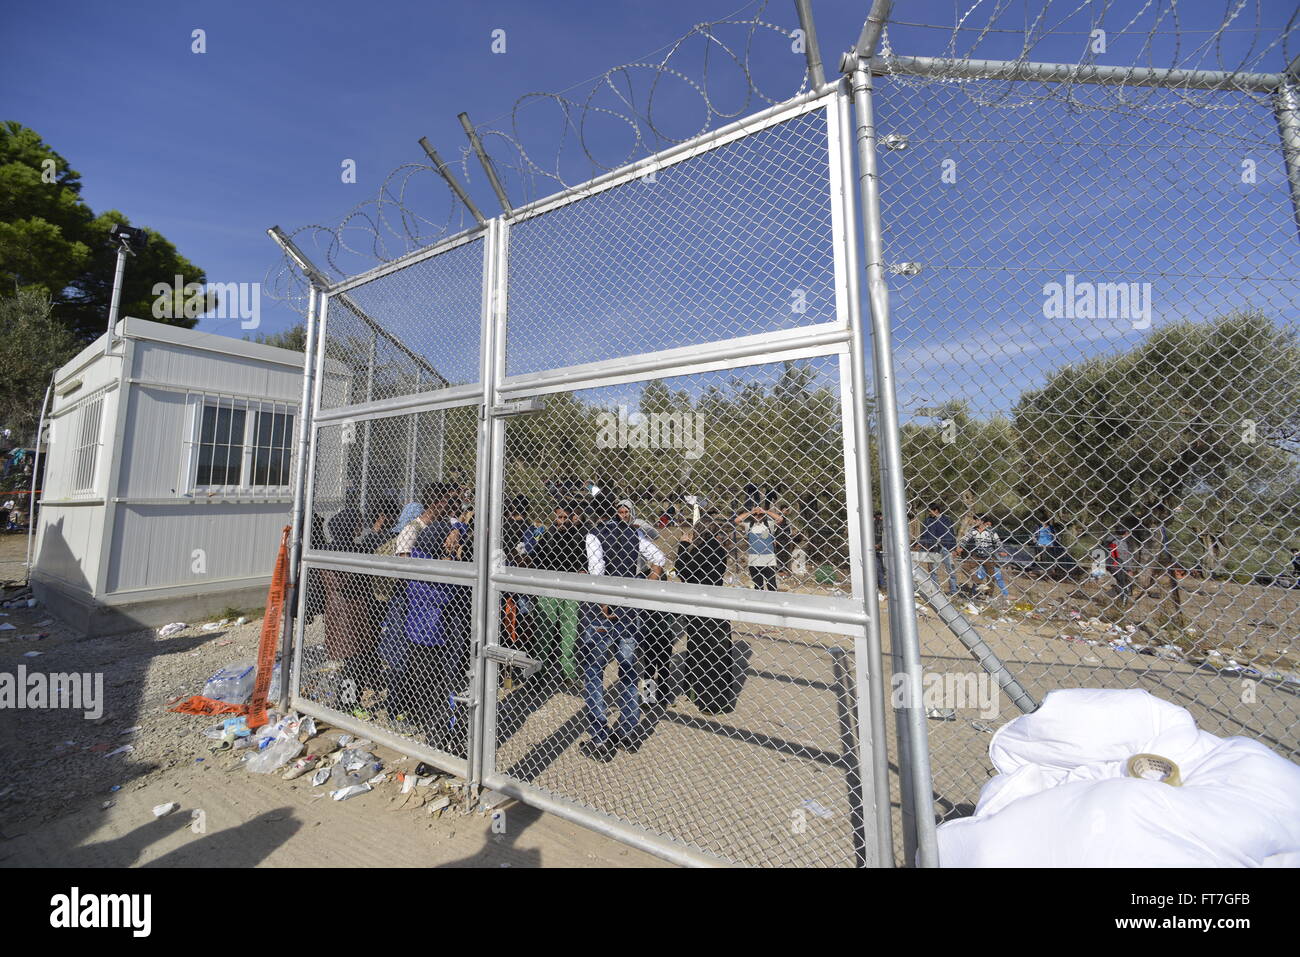 Lesbo, Grecia- Ottobre 14, 2015, 2015. Rifugiati e migranti arrivati a Lesbo in gommoni barche, rimangono nella camma di rifugiato Foto Stock